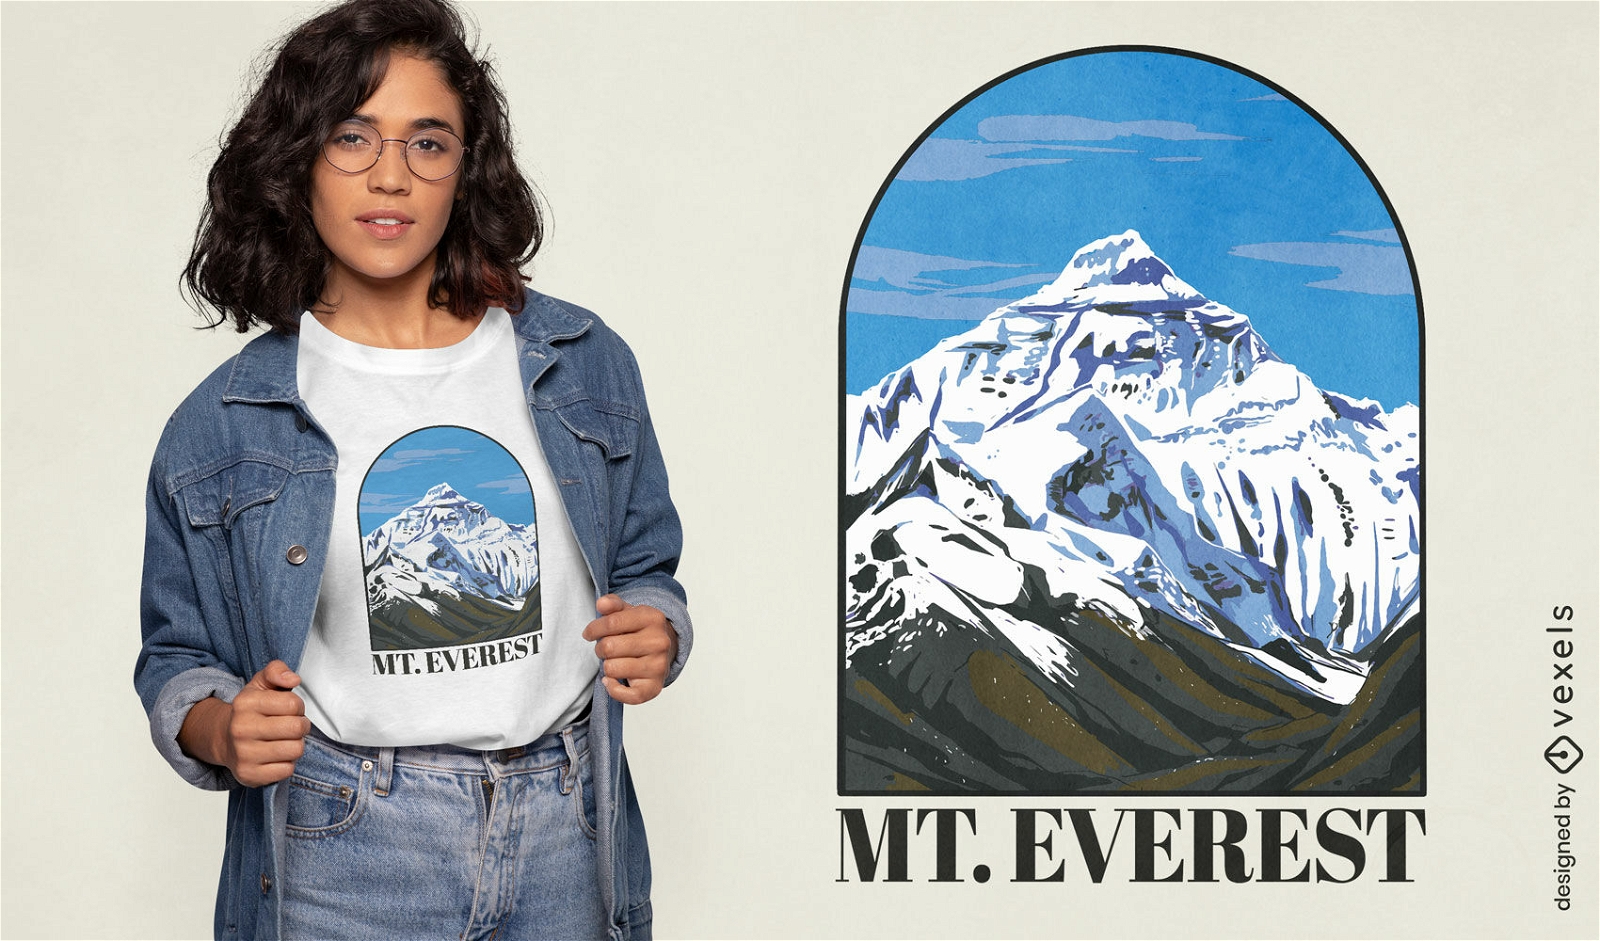 Mount Everest-Landschafts-T-Shirt-Design